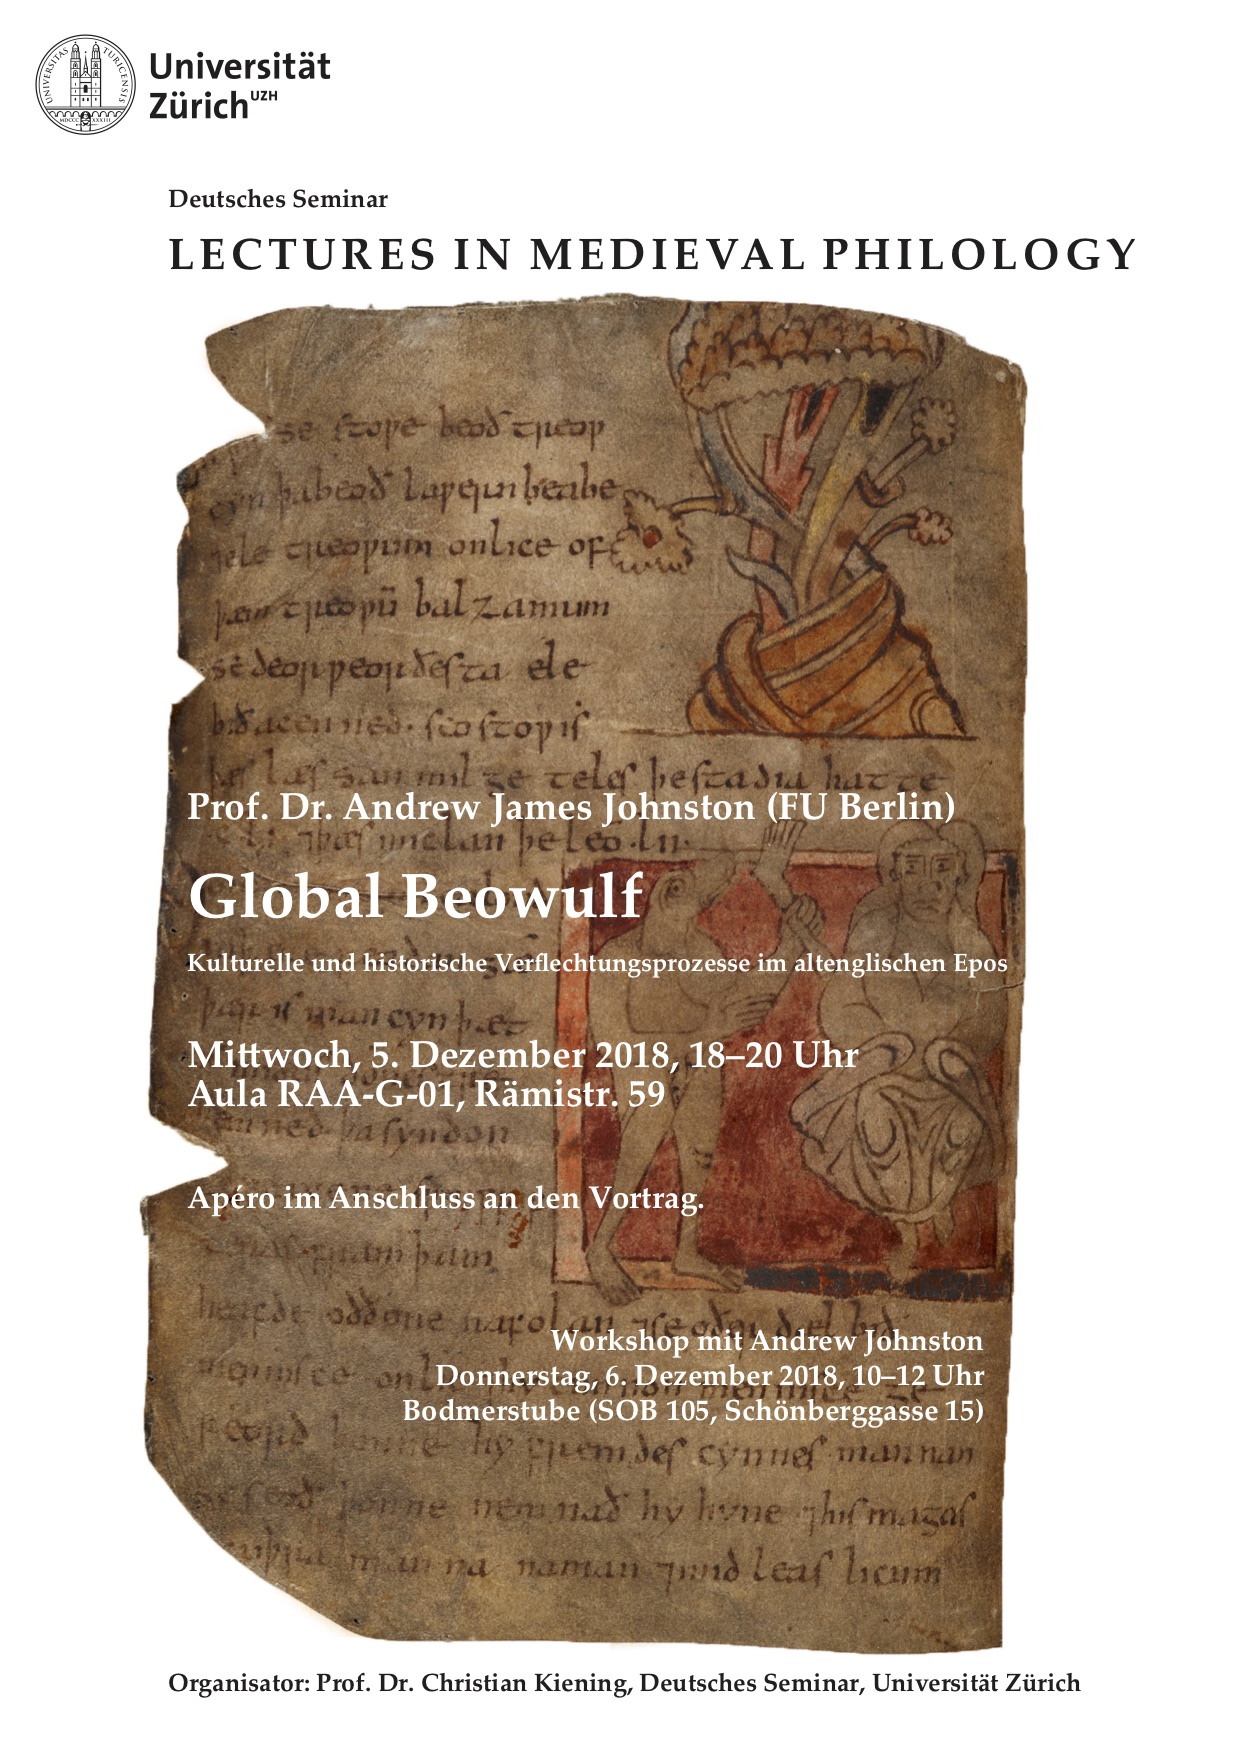 Lecture in Medieval Philology" with Prof. Dr. Andrew James Johnston (FU Berlin): "Global Beowulf. Kulturelle und historische Verflechtungsprozesse im altenglischen Epos".